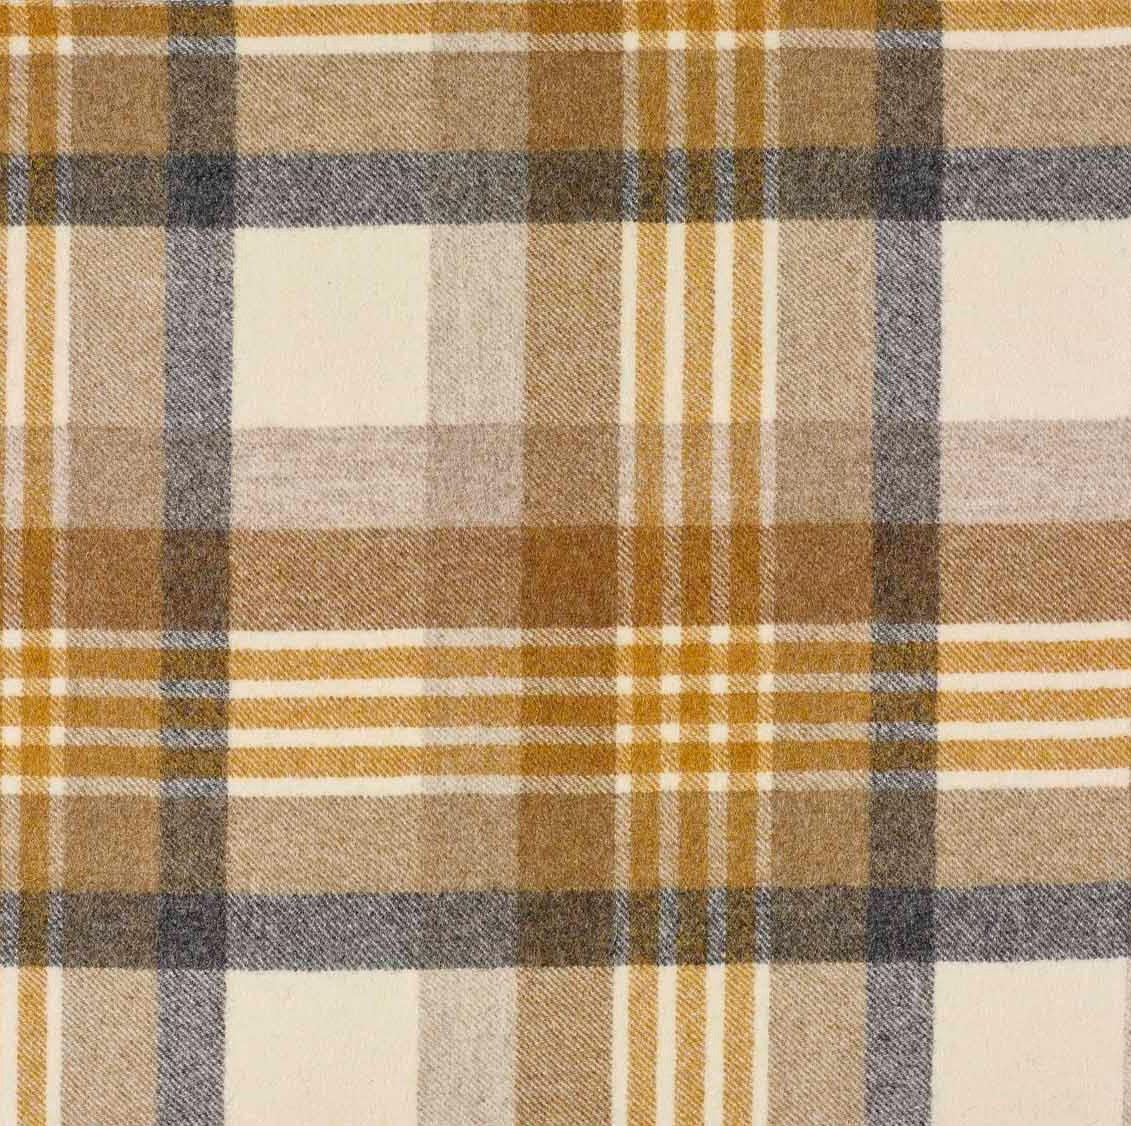 U1505-AA14-Cheltenham-Mustard fabric from JLP